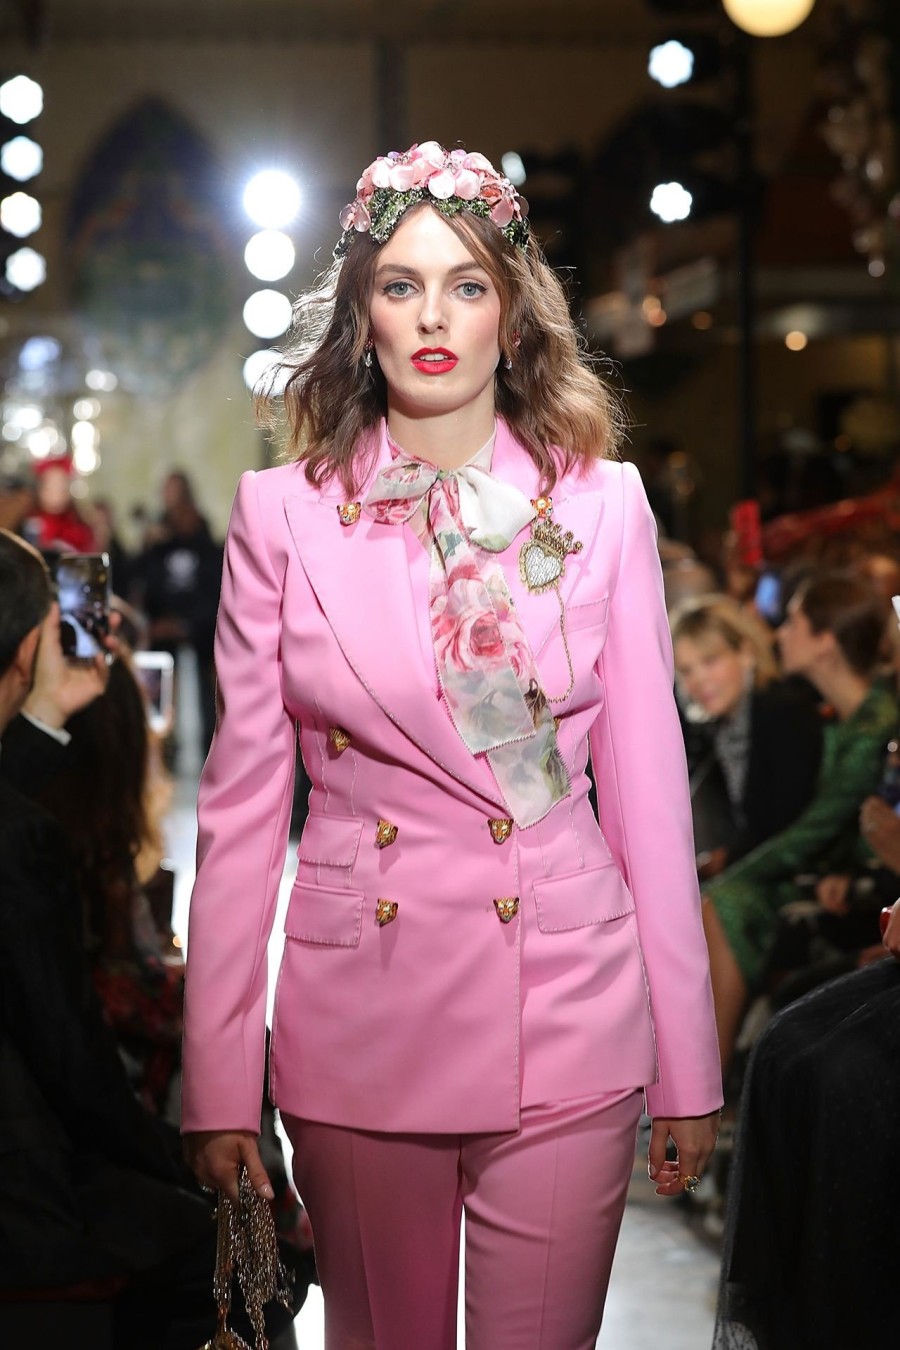 Οι Dolce & Gabbana μεταμορφώνουν τα Harrods του Λονδίνου για μια βραδιά - Φωτογραφία 6